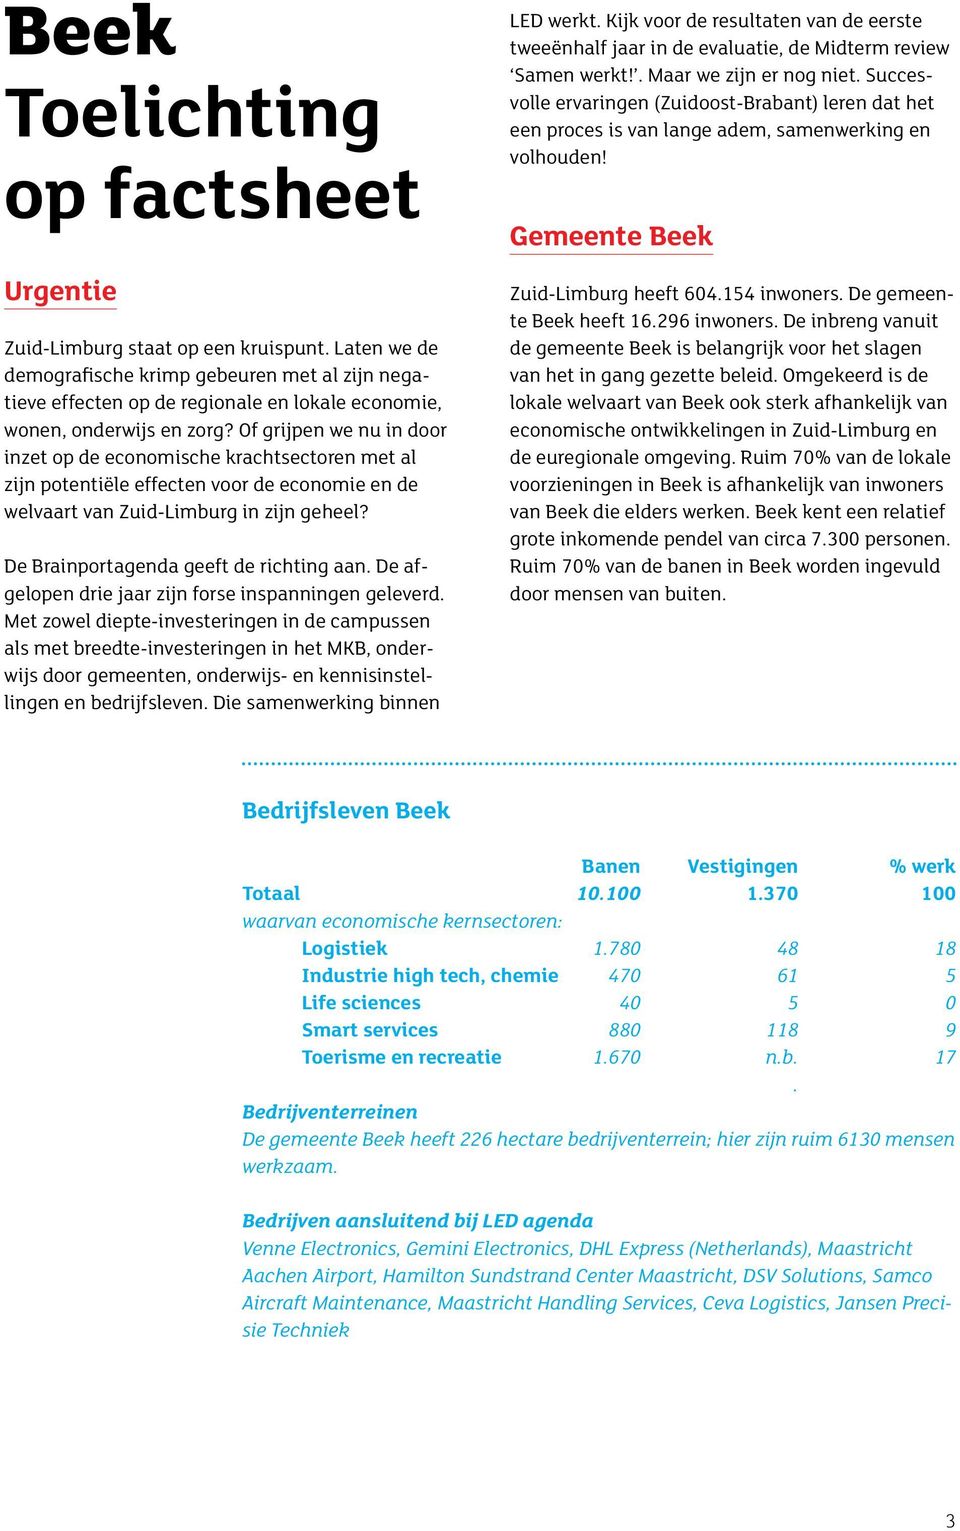 Of grijpen we nu in door inzet op de economische krachtsectoren met al zijn potentiële effecten voor de economie en de welvaart van Zuid-Limburg in zijn geheel?